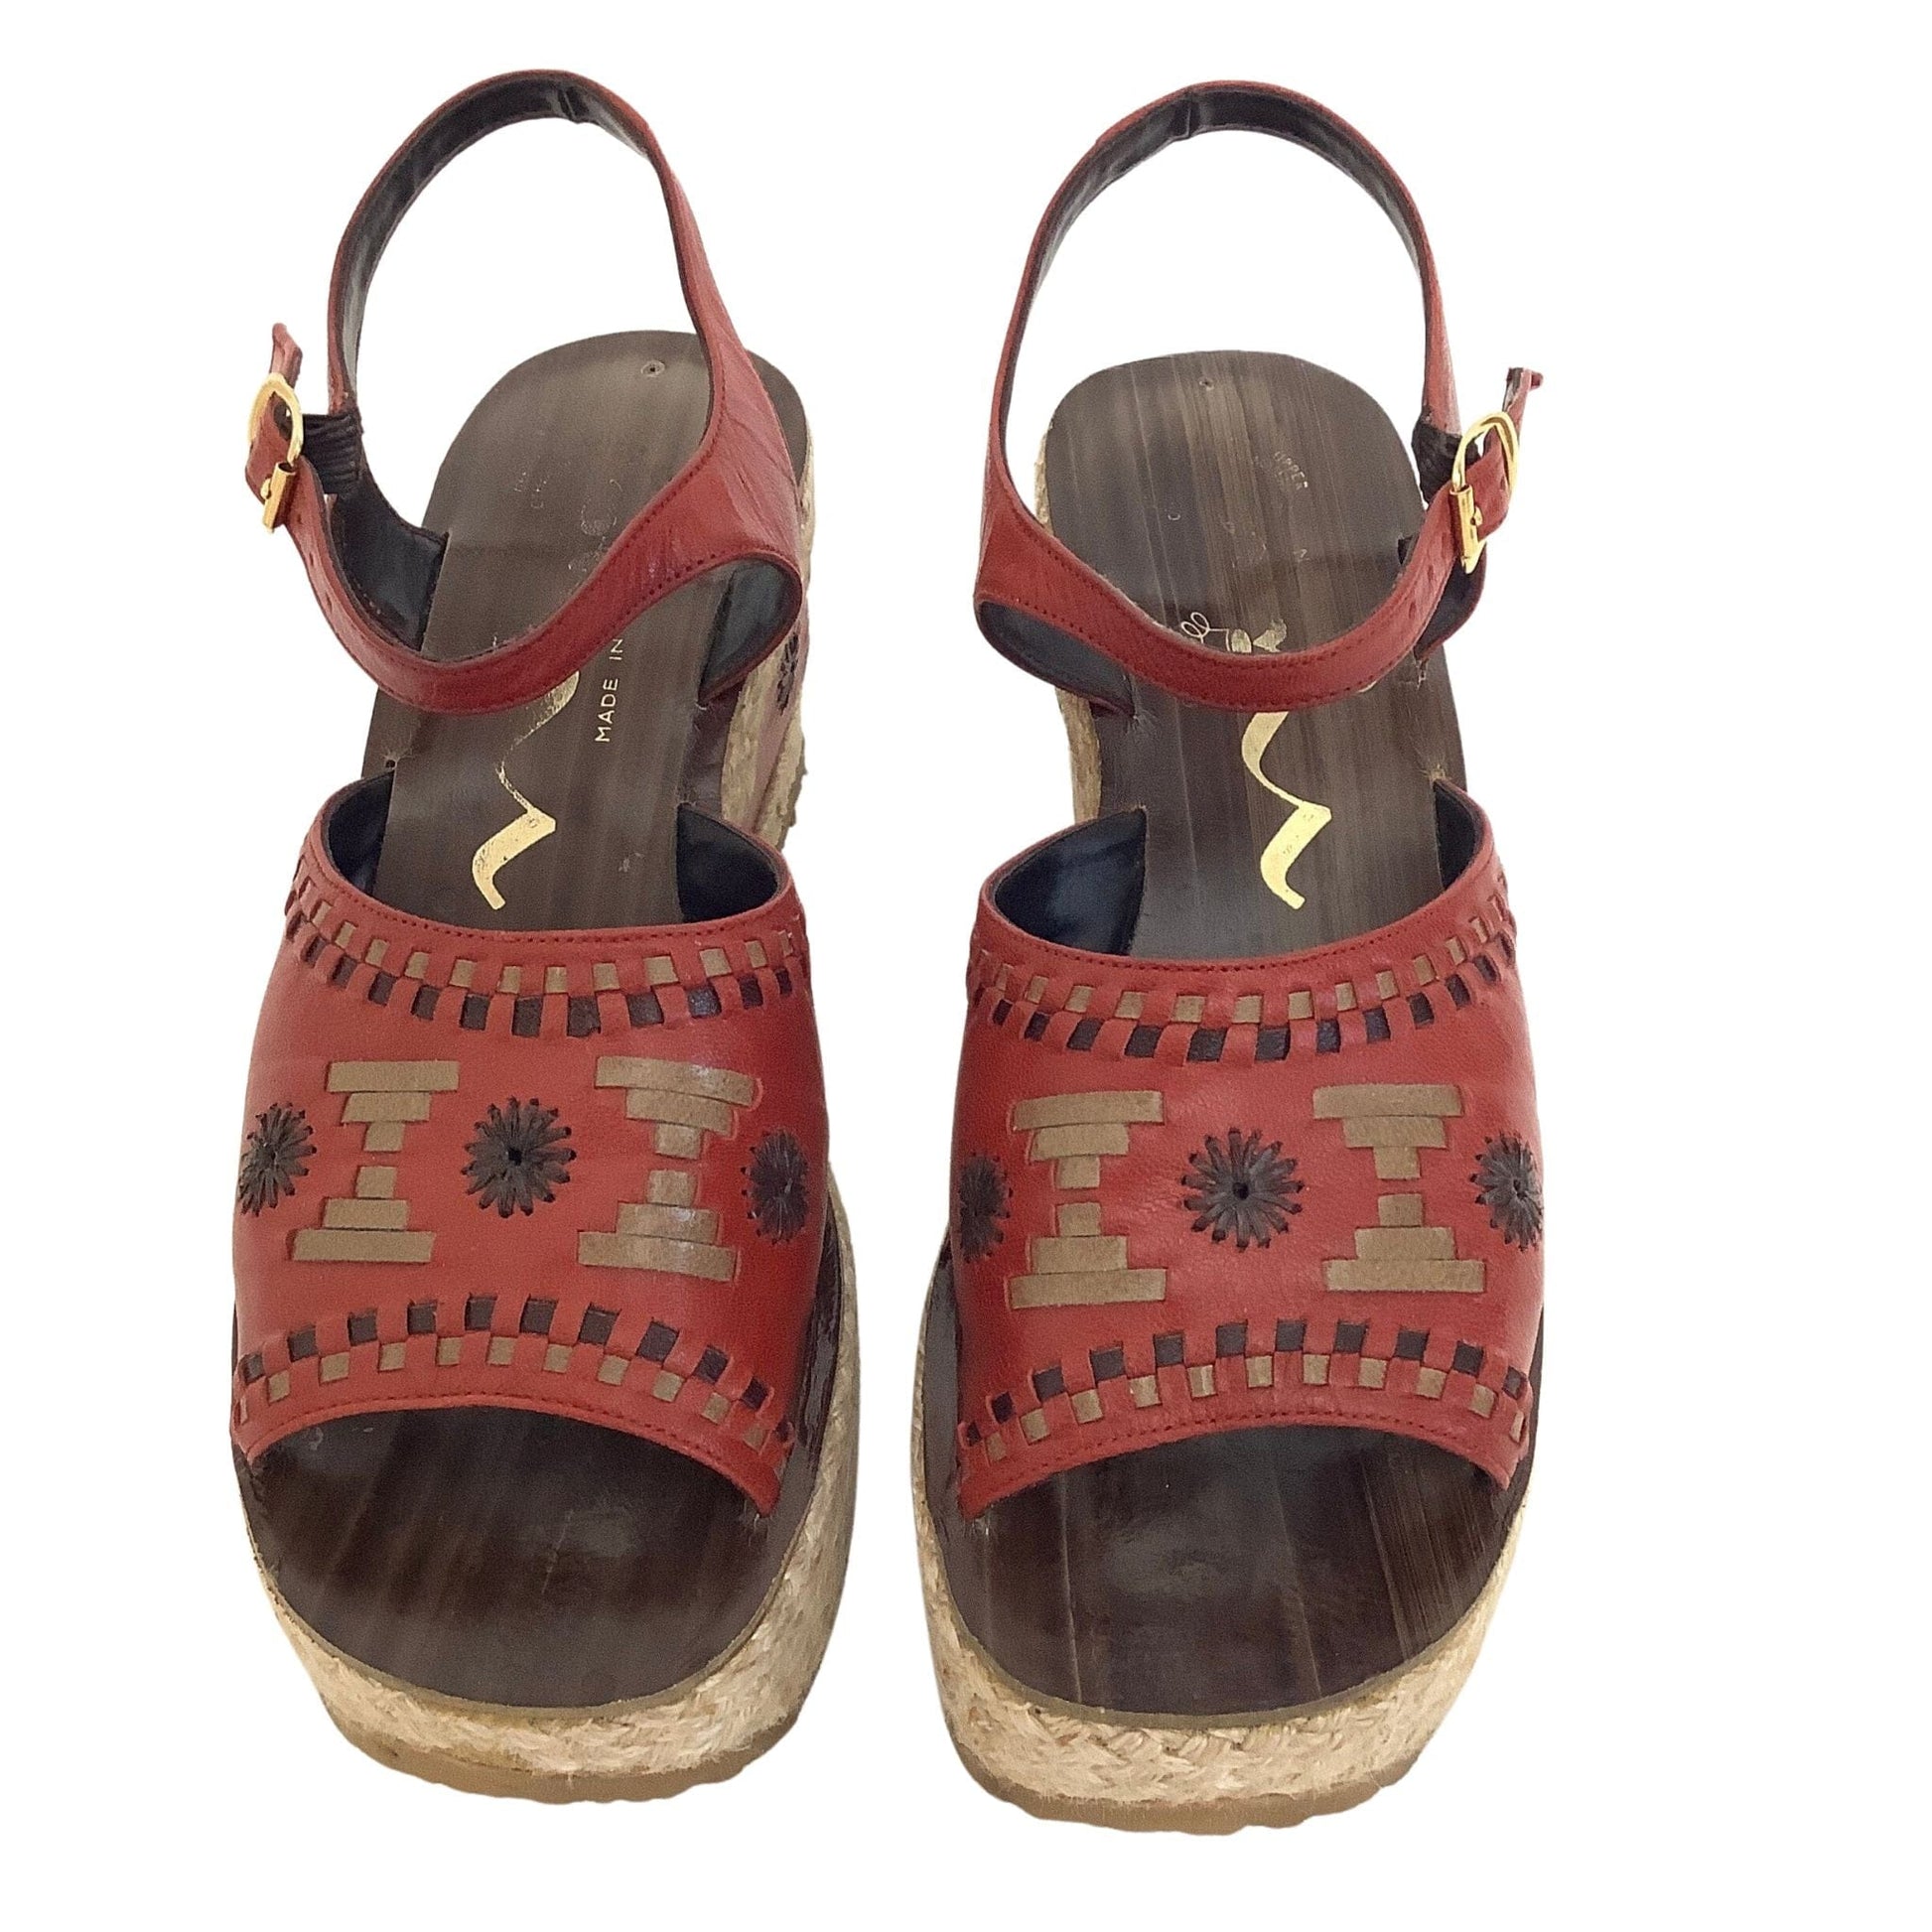 Vintage Boho Platform Sandals 7.5 / Orange / Y2K - Now